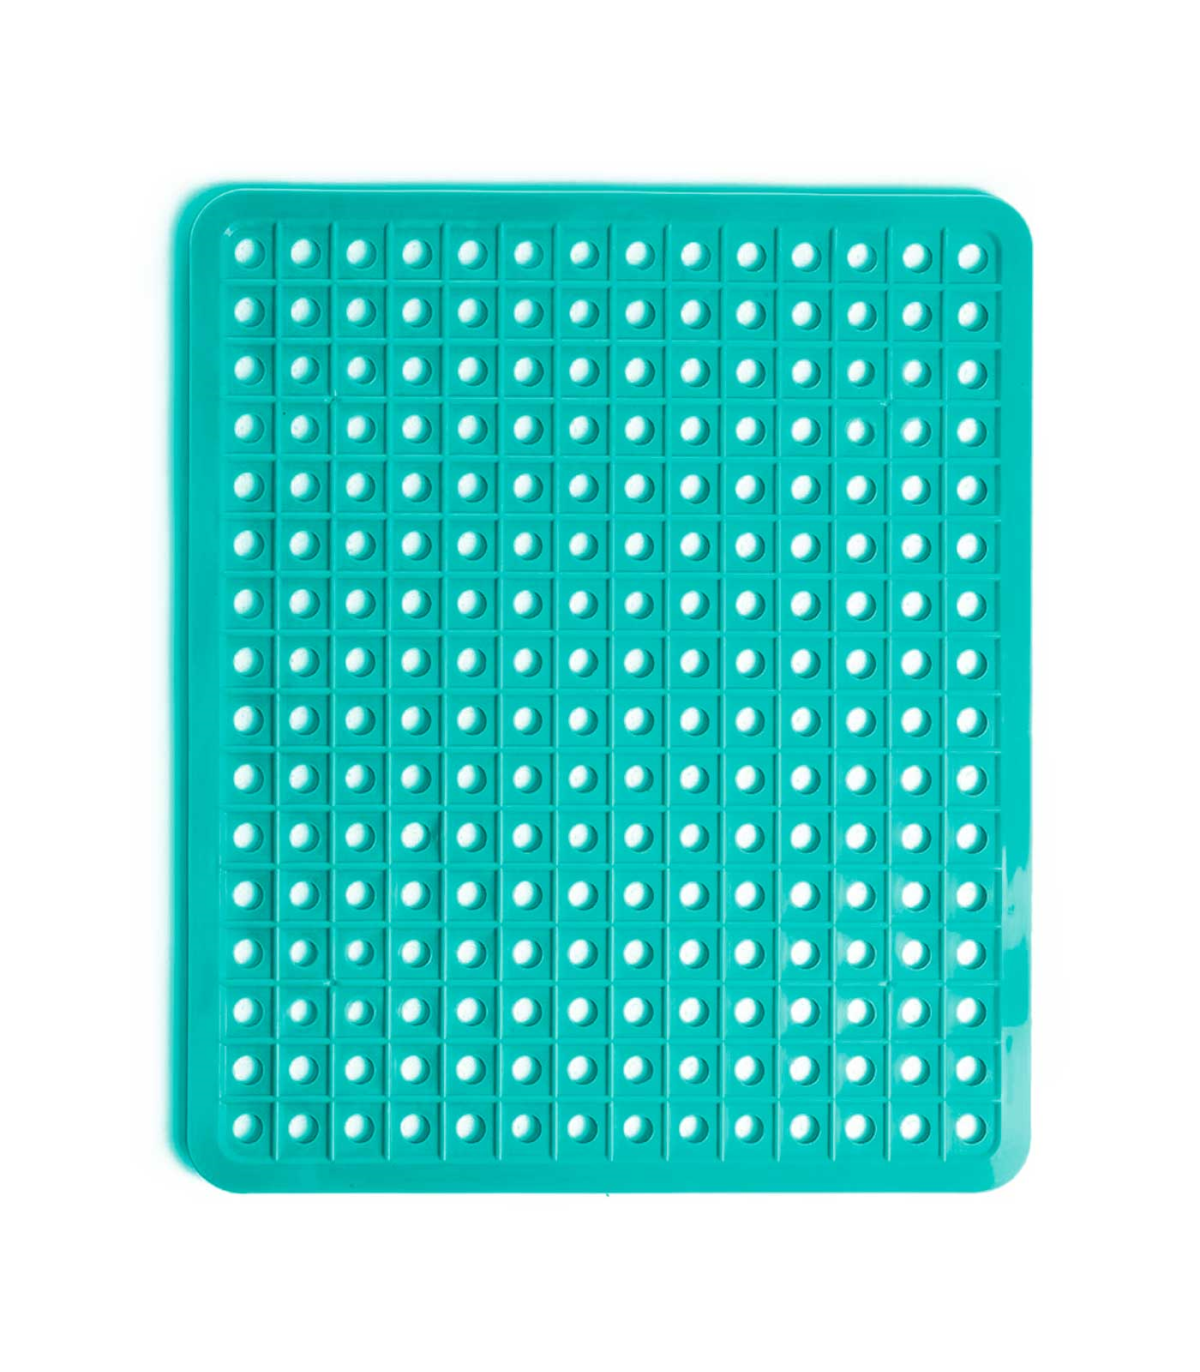 Tradineur - Salvaplatos antideslizante, protege el fregadero, 32 x 27 cm,  color surtido, alfombrilla escurreplatos con orificios